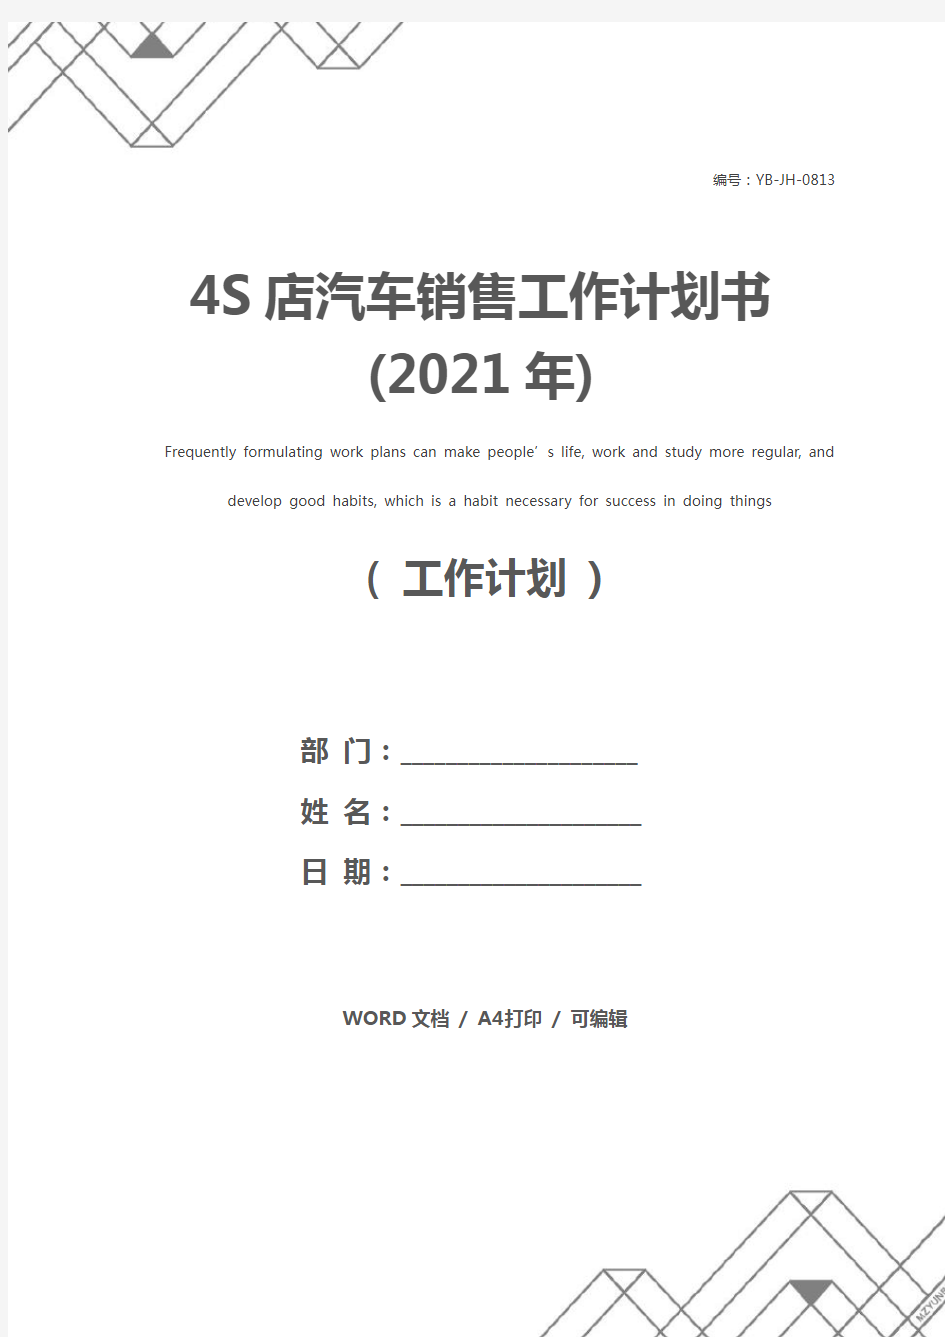 4S店汽车销售工作计划书(2021年)